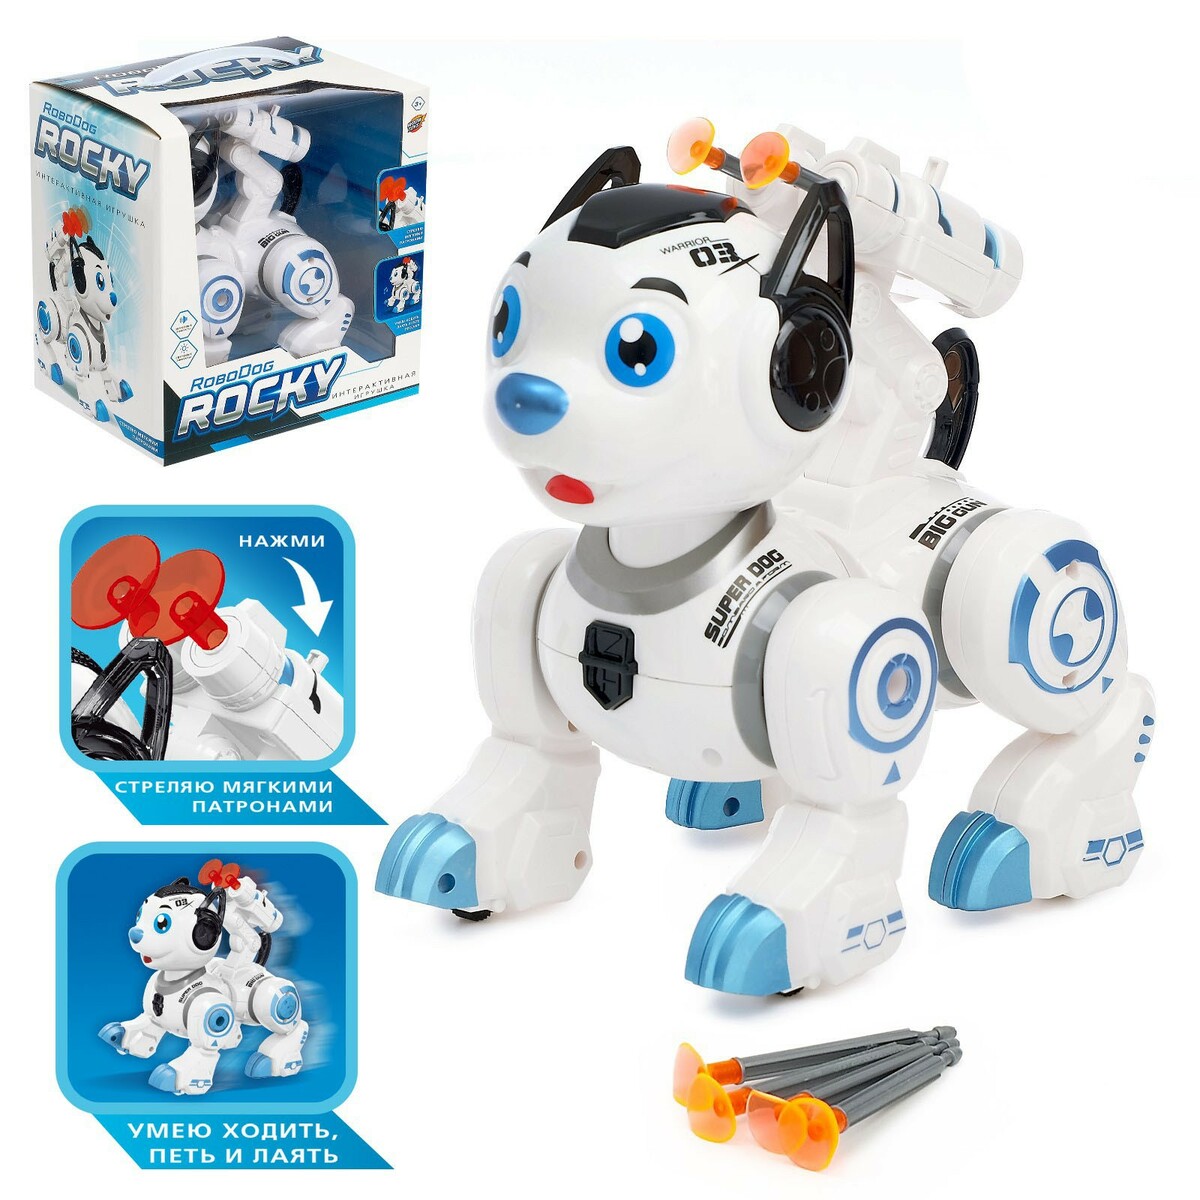 Робот собака робот собака рокки стреляет световые эффекты работает от батареек синий